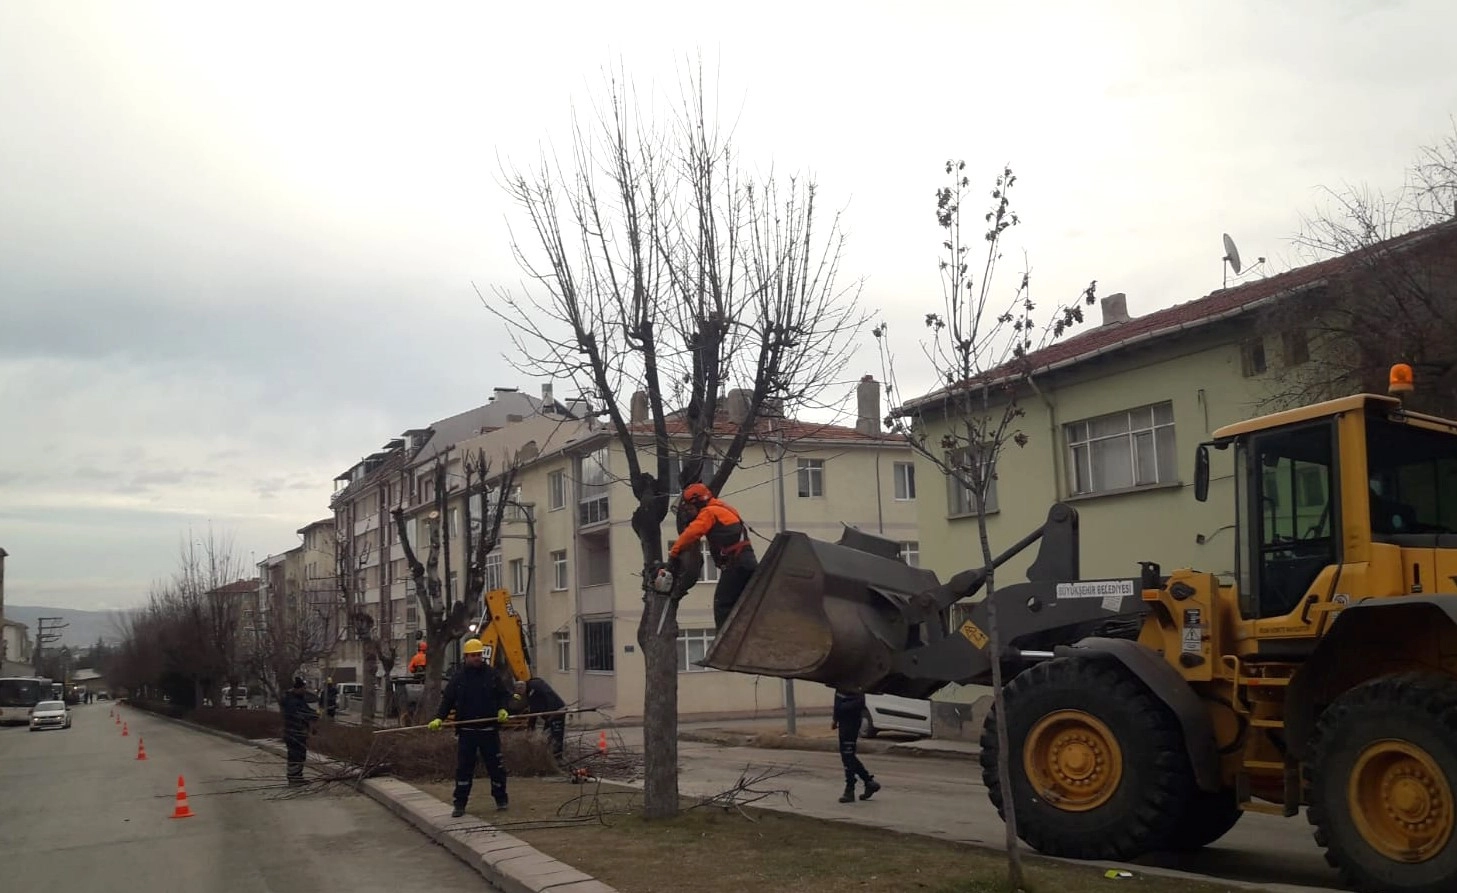 Eskişehir Büyükşehir Belediyesi Ağaçların Bakım ve Budama Çalışmalarını Aralıksız Sürdürüyor